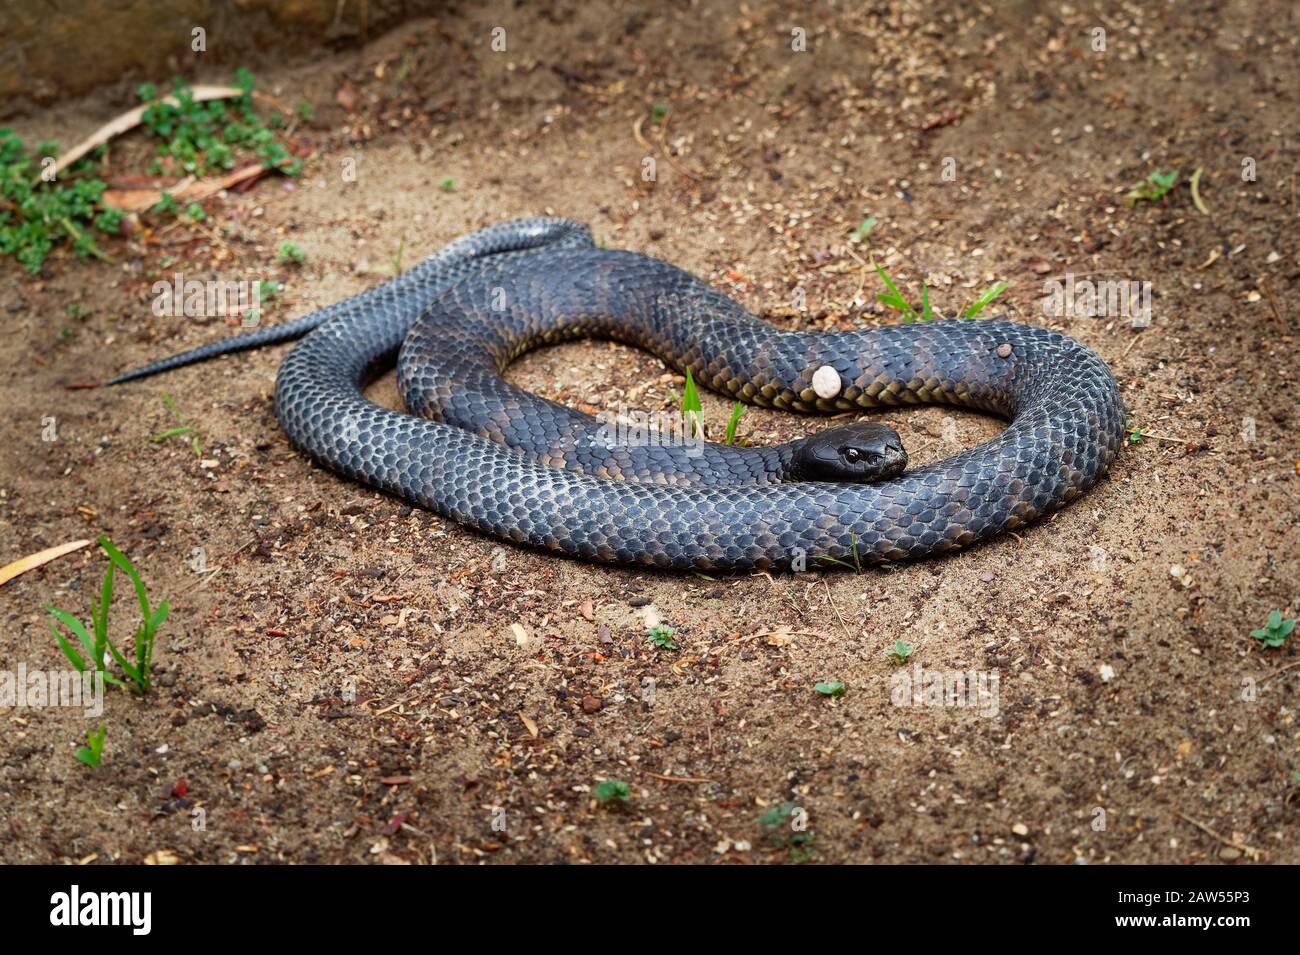 Serpent brun de l'est - Pseudonaja textilis aussi le serpent brun commun, est un serpent très venimeux de la famille des Elapidae, originaire de l'est et centra Banque D'Images